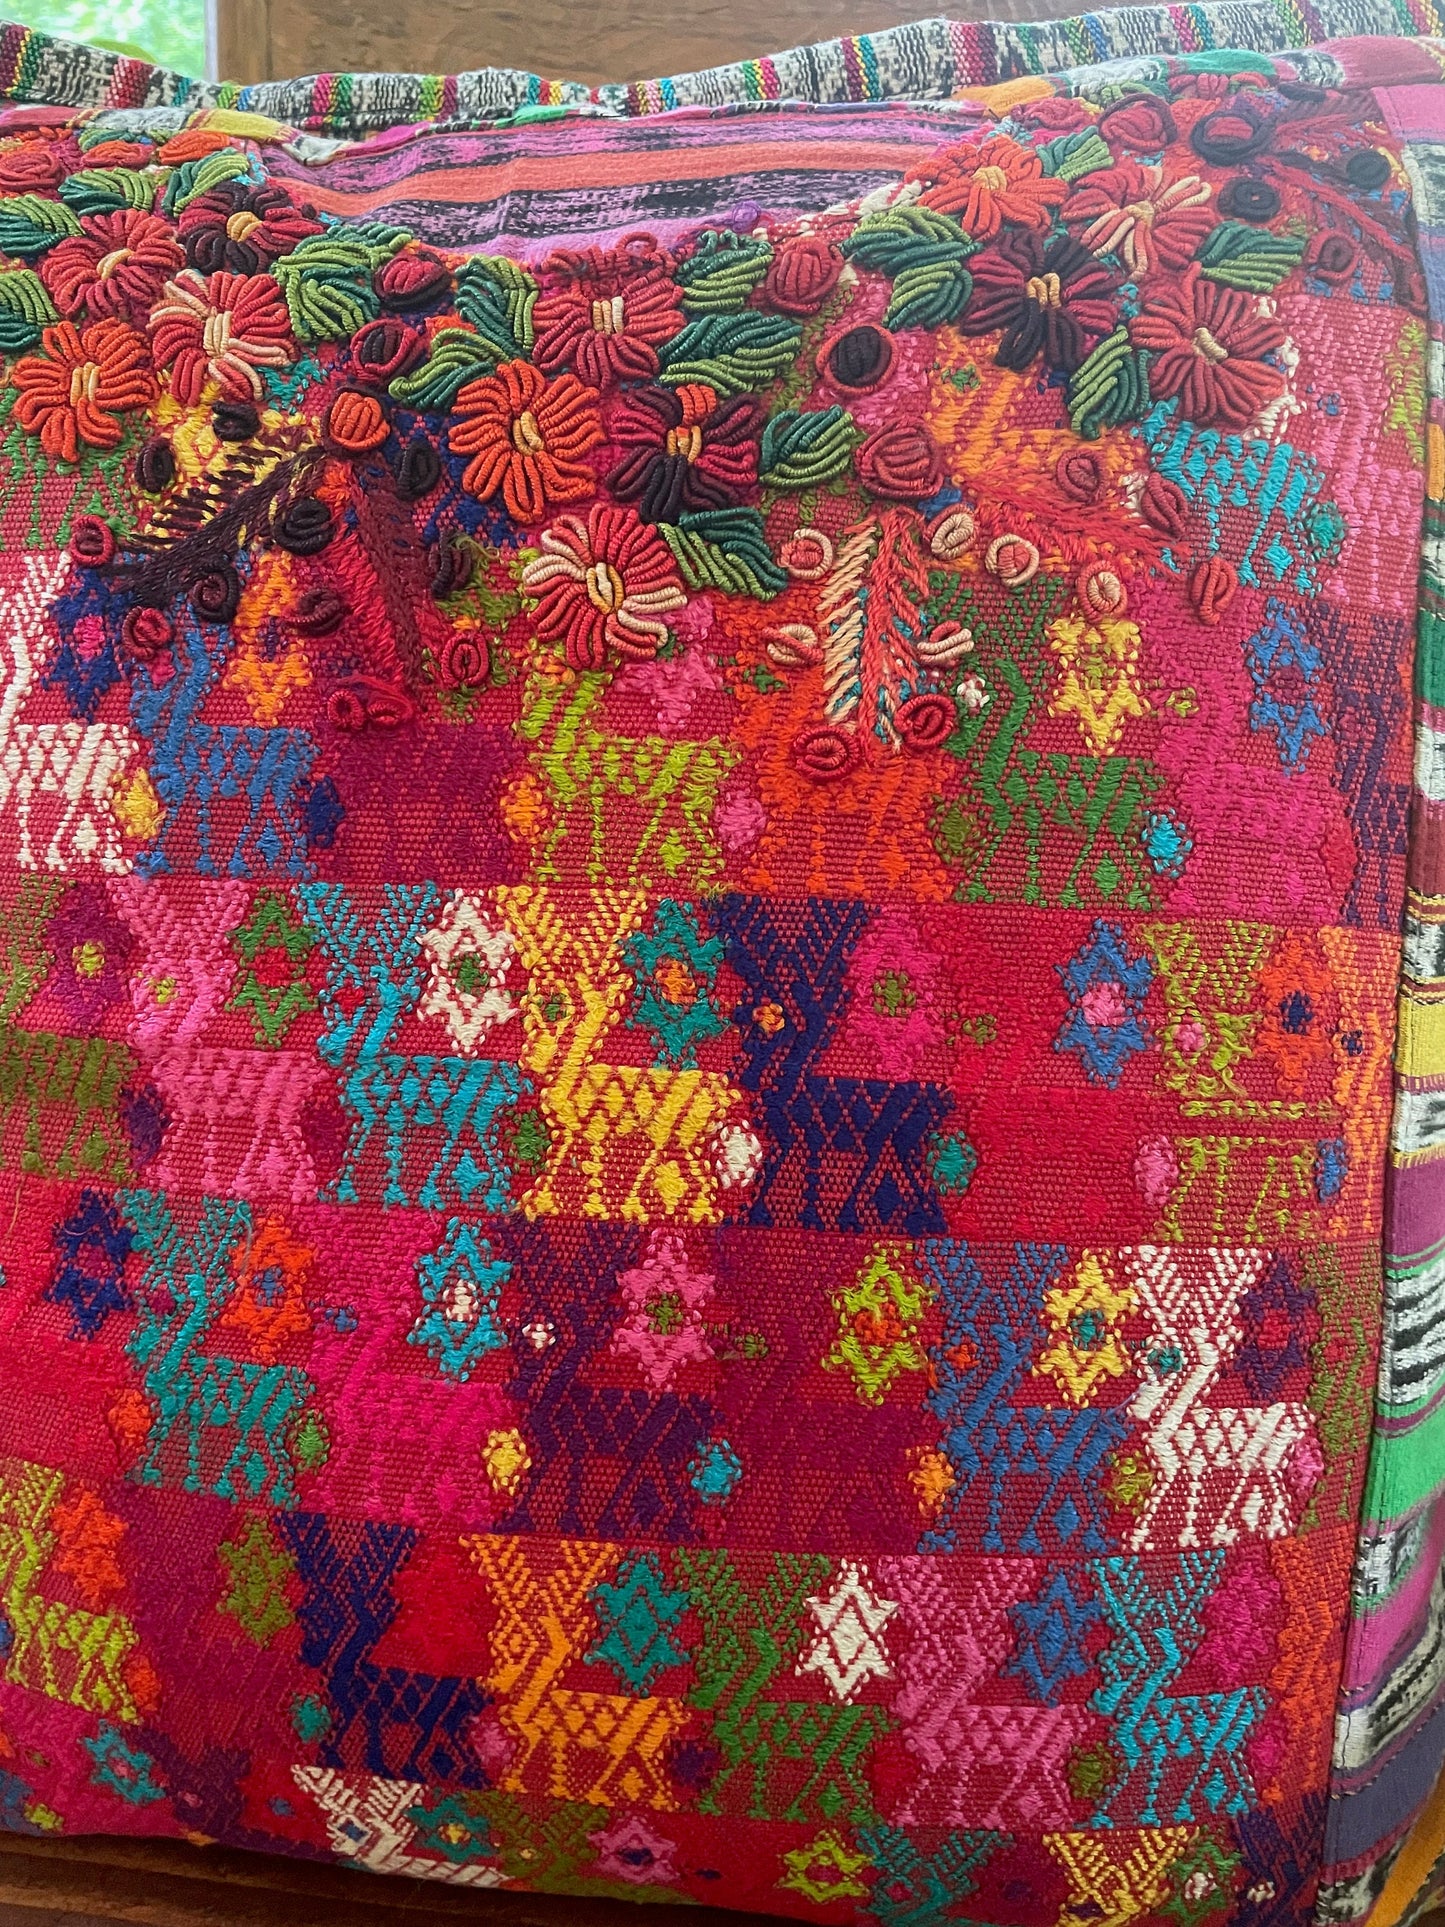 Guatemalan Huipil pillow covers from Coban